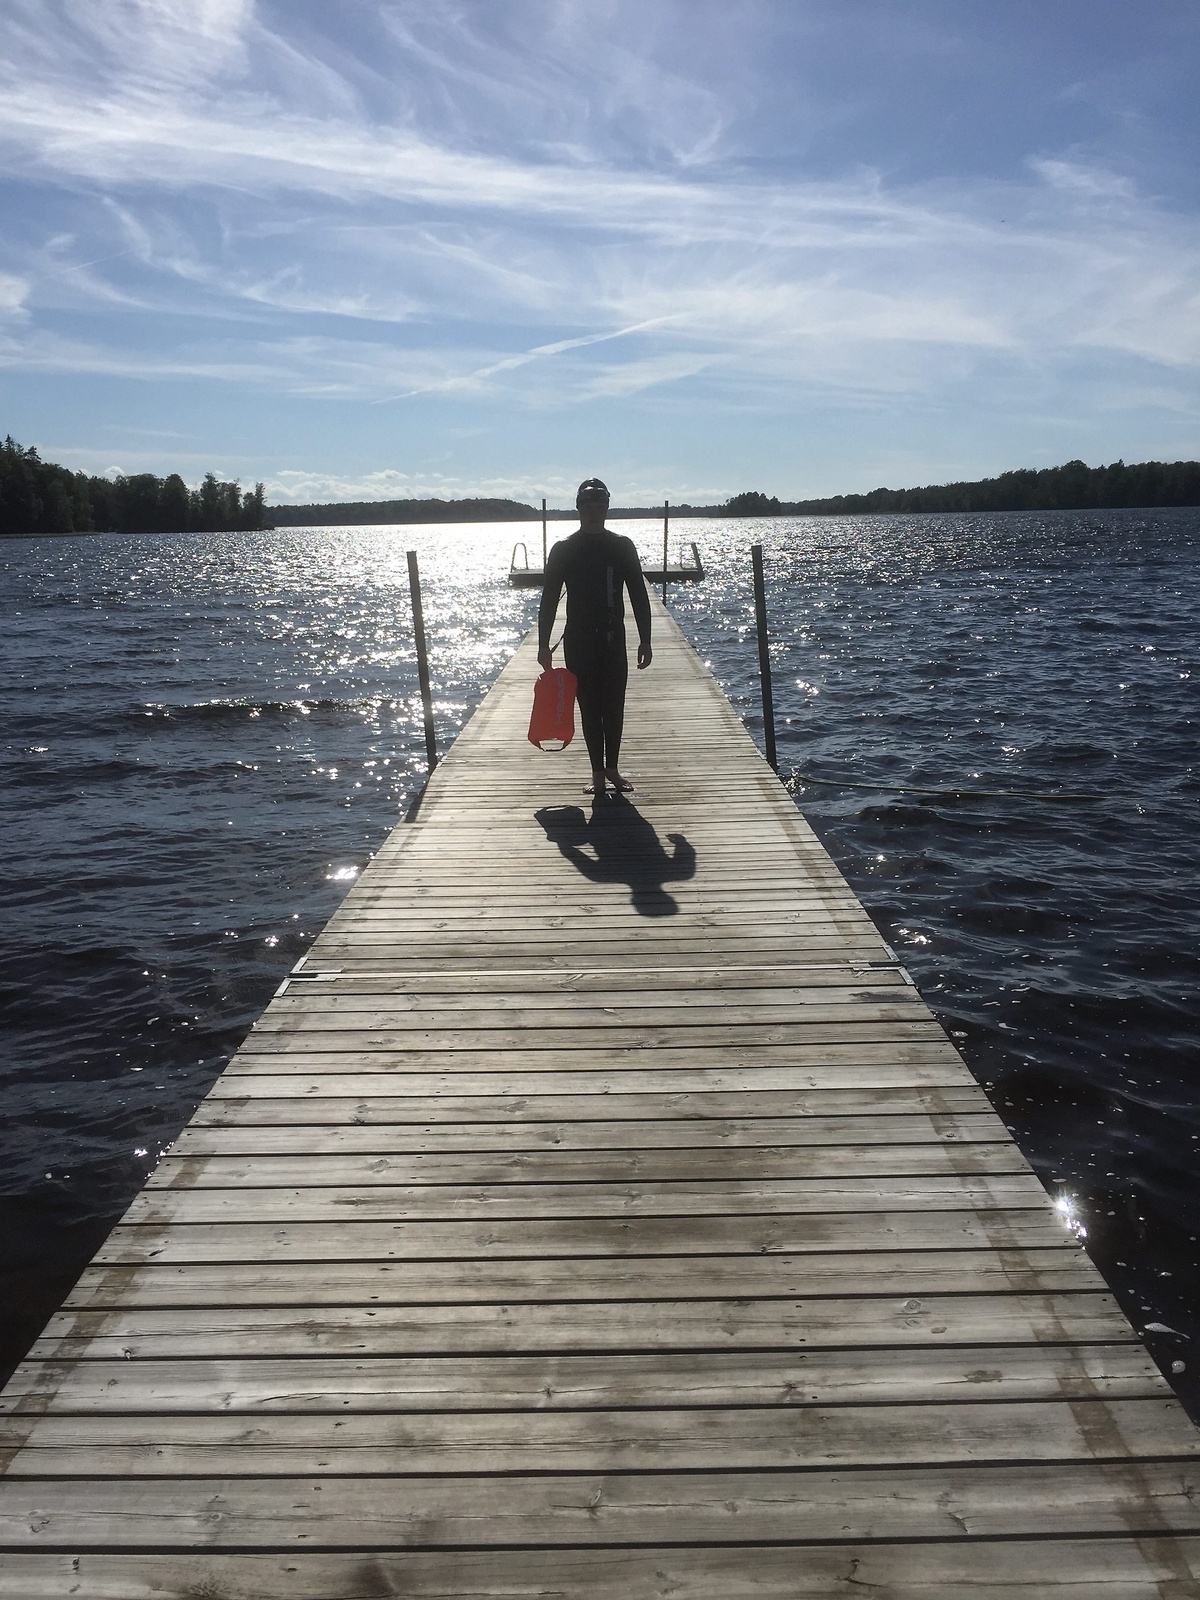 Fabian Claëson är snart 13 år gammal. Han bor i Hästveda och älskar att vara vid Luhrsjön och bada. På bilden ser ni Fabian i våtdräkt när han precis simtränat i Luhrsjön inför en tävling i Göta kanal den 1 augusti. Fotograf är mamma Anna Claëson.